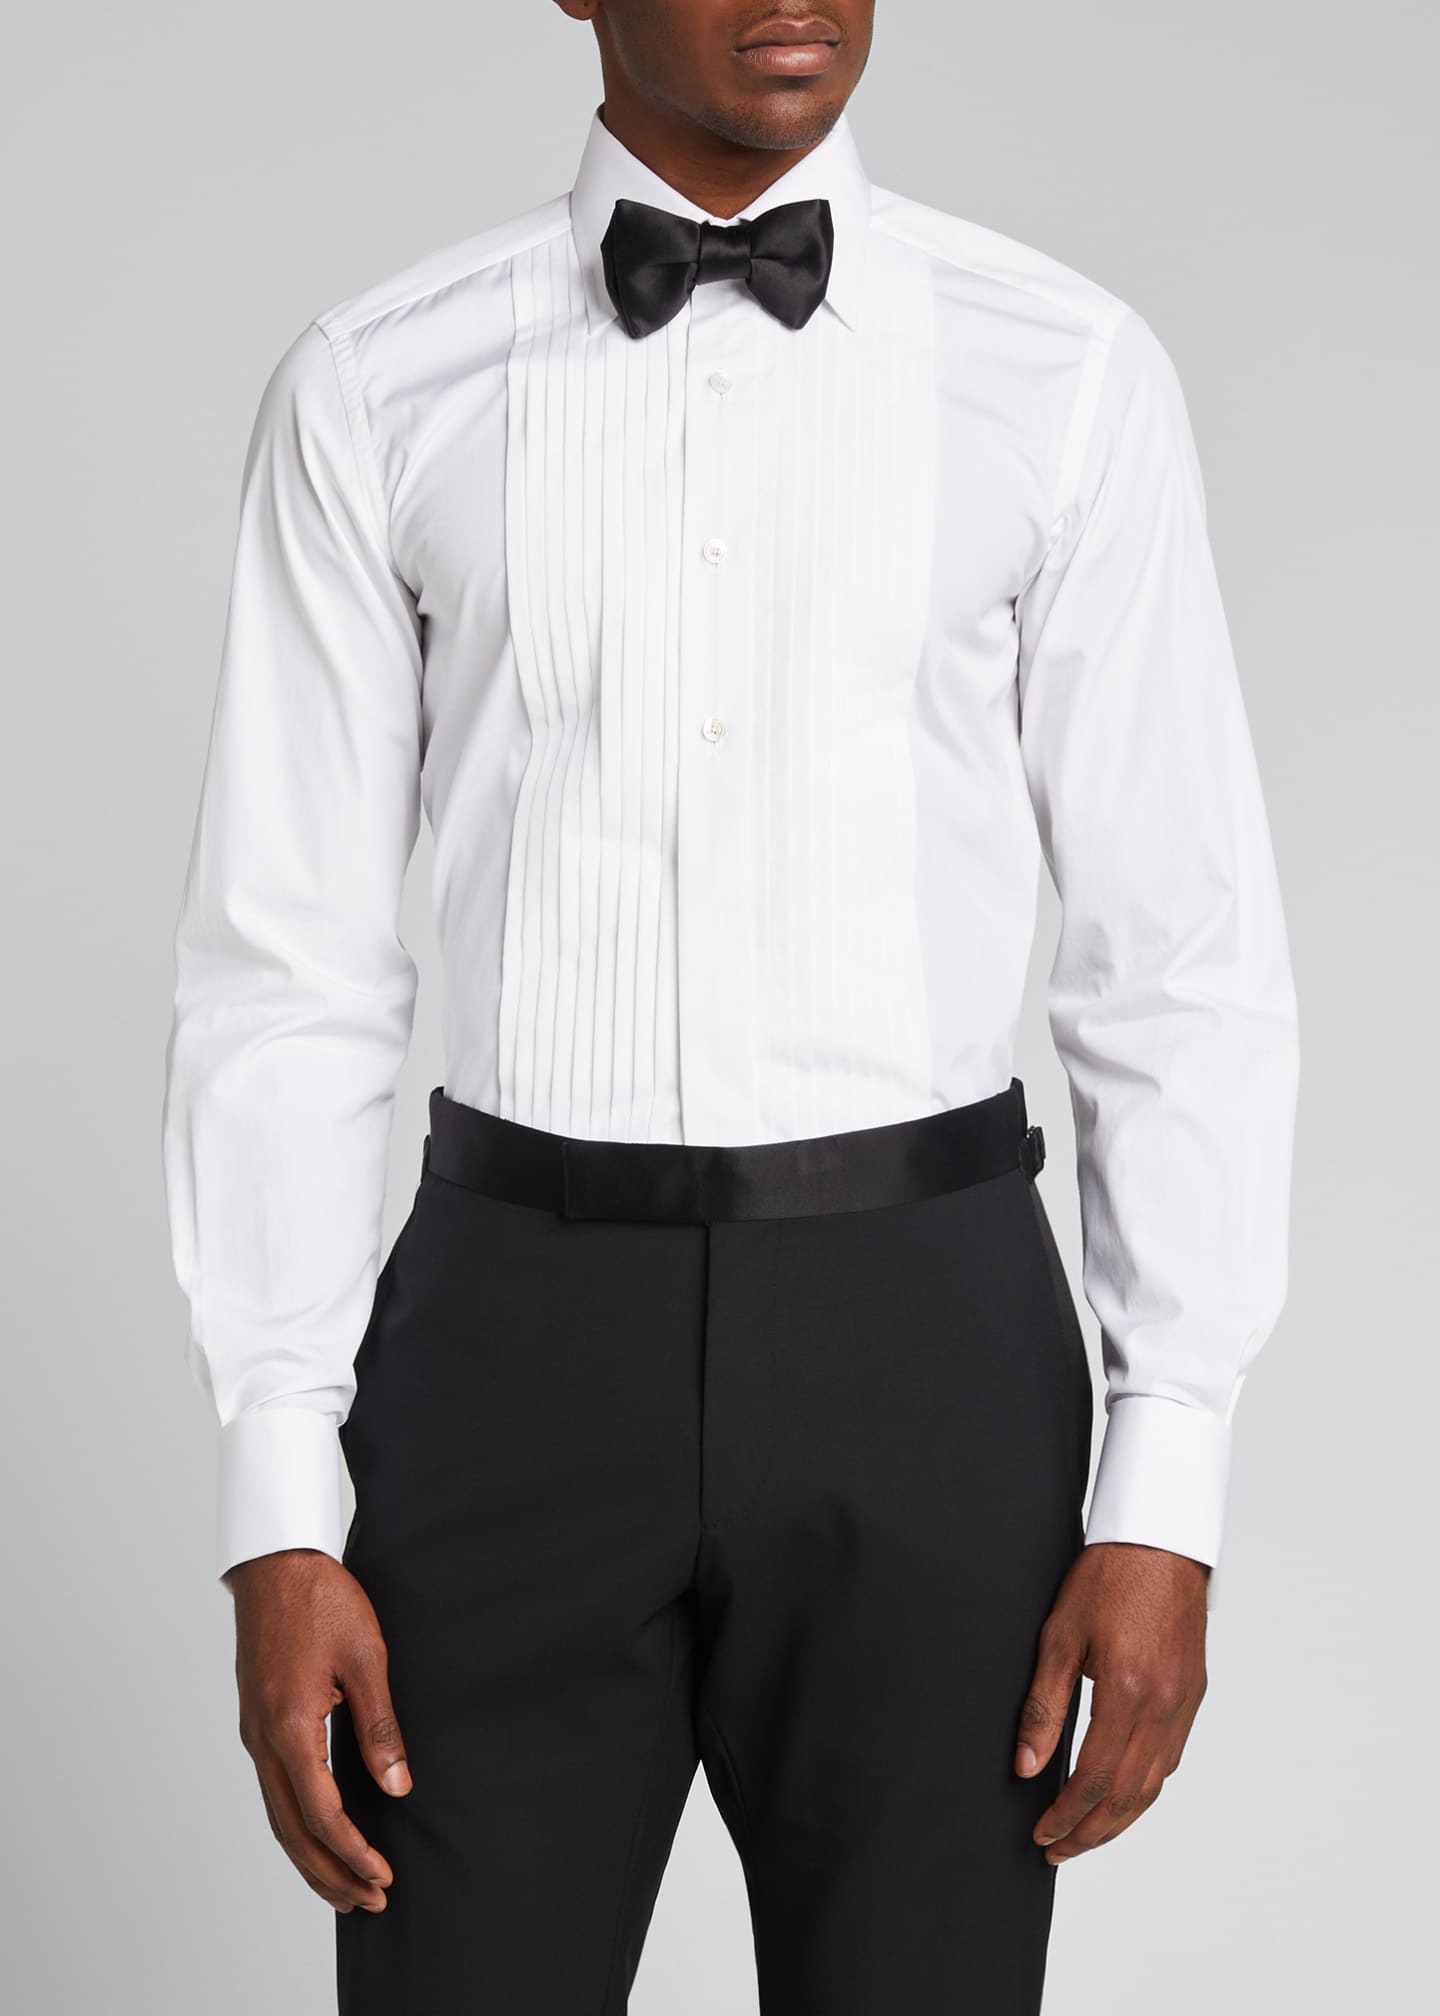 TOM FORD Men's Plisse Plastron Tuxedo Shirt - Bergdorf Goodman